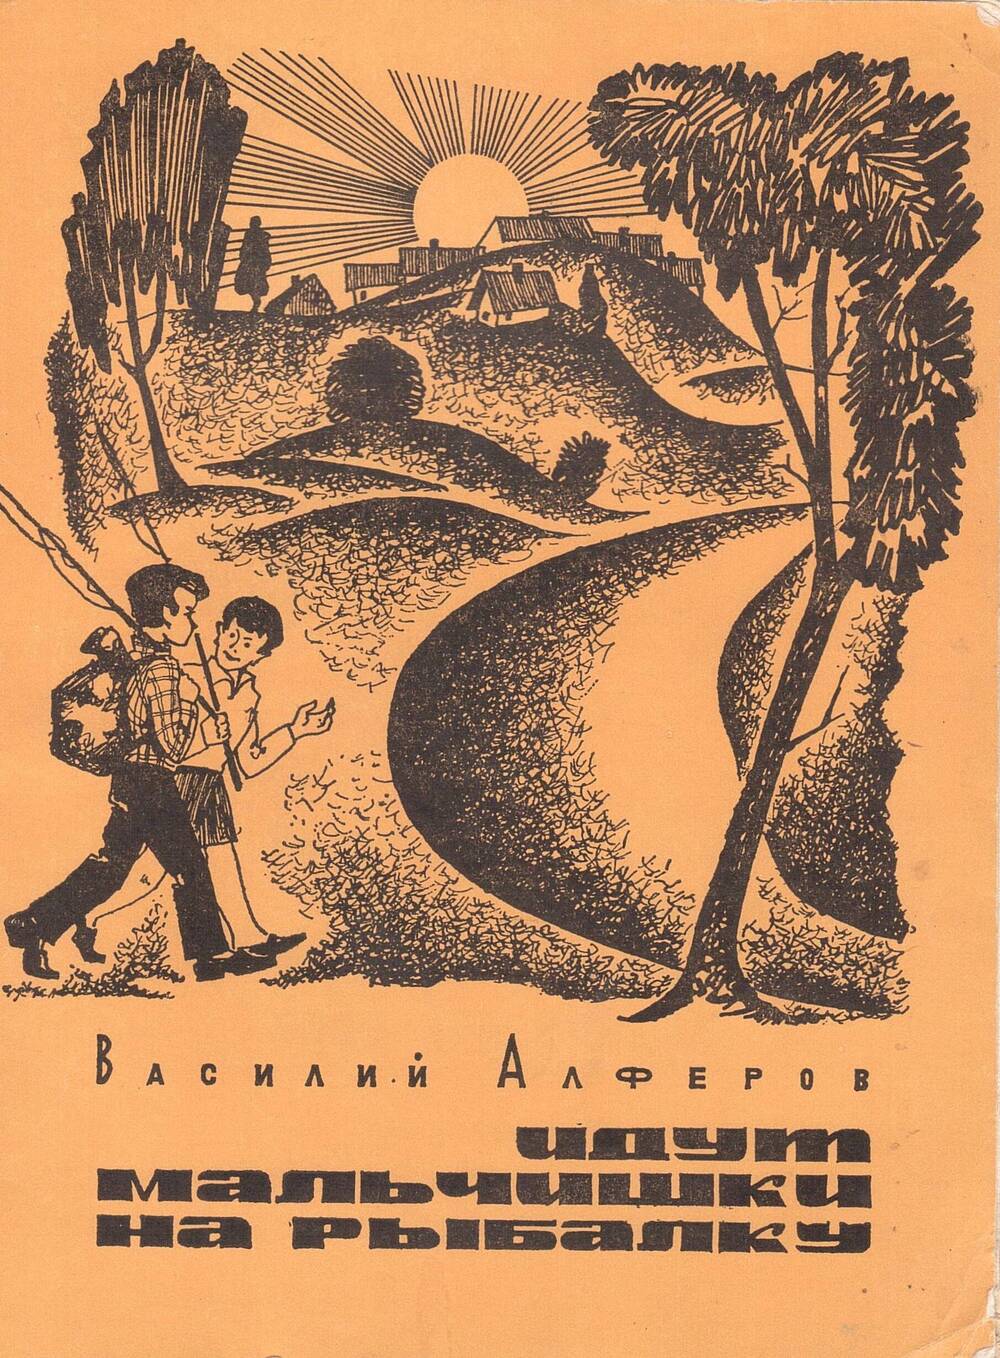 Сборник рассказов писателя Алфёрова Василия Григорьевича Идут мальчишки на рыбалку, 1974 год, с дарственной надписью музею от  автора.